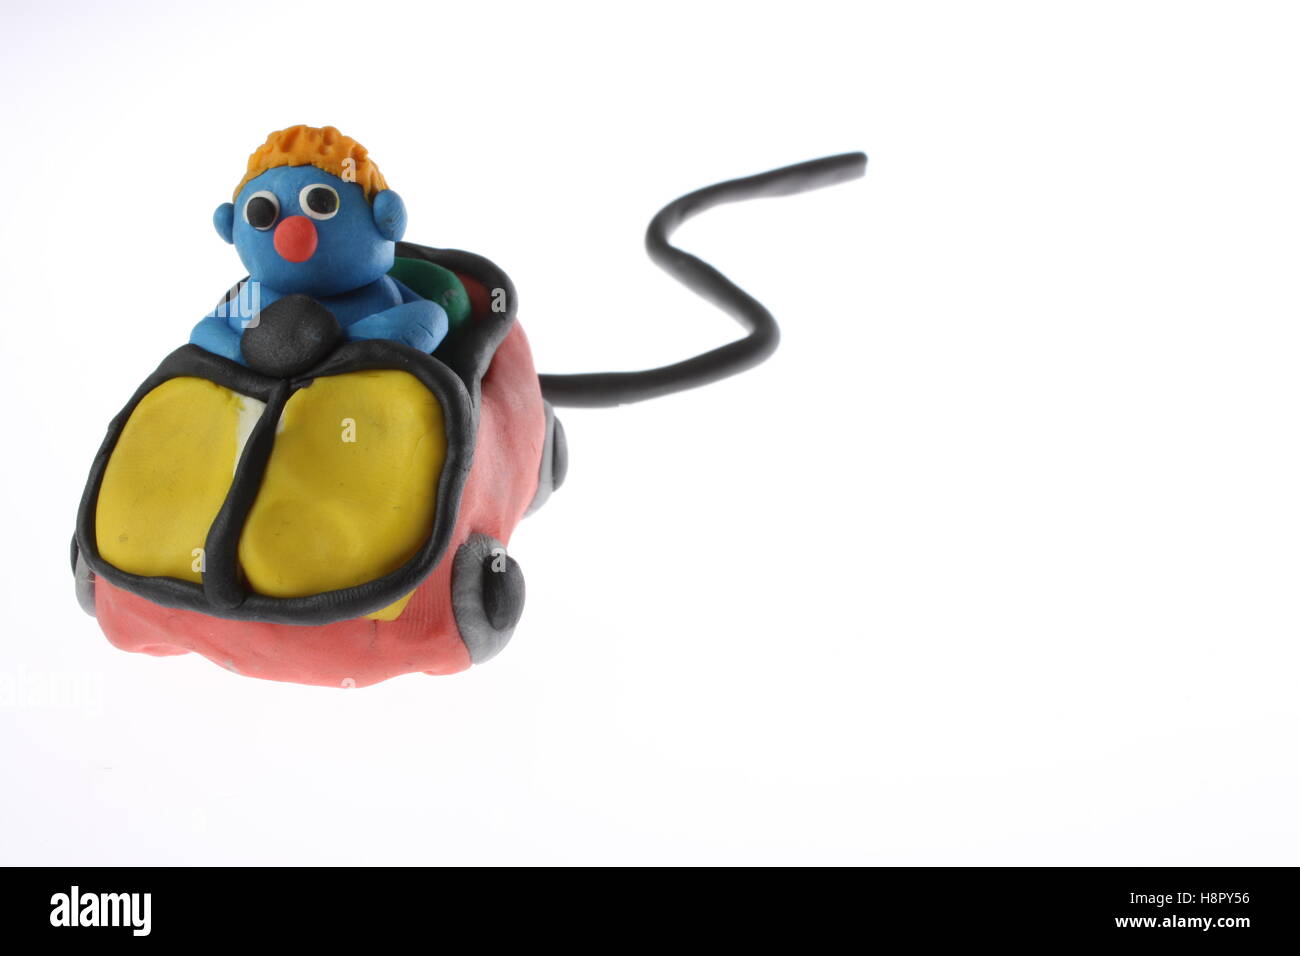 Play Doh Modell von einem Mann, der einen Computer Maus ideal Logo Bilder  für Auto Versicherung Vergleich Unternehmen/Abdeckung Stockfotografie -  Alamy